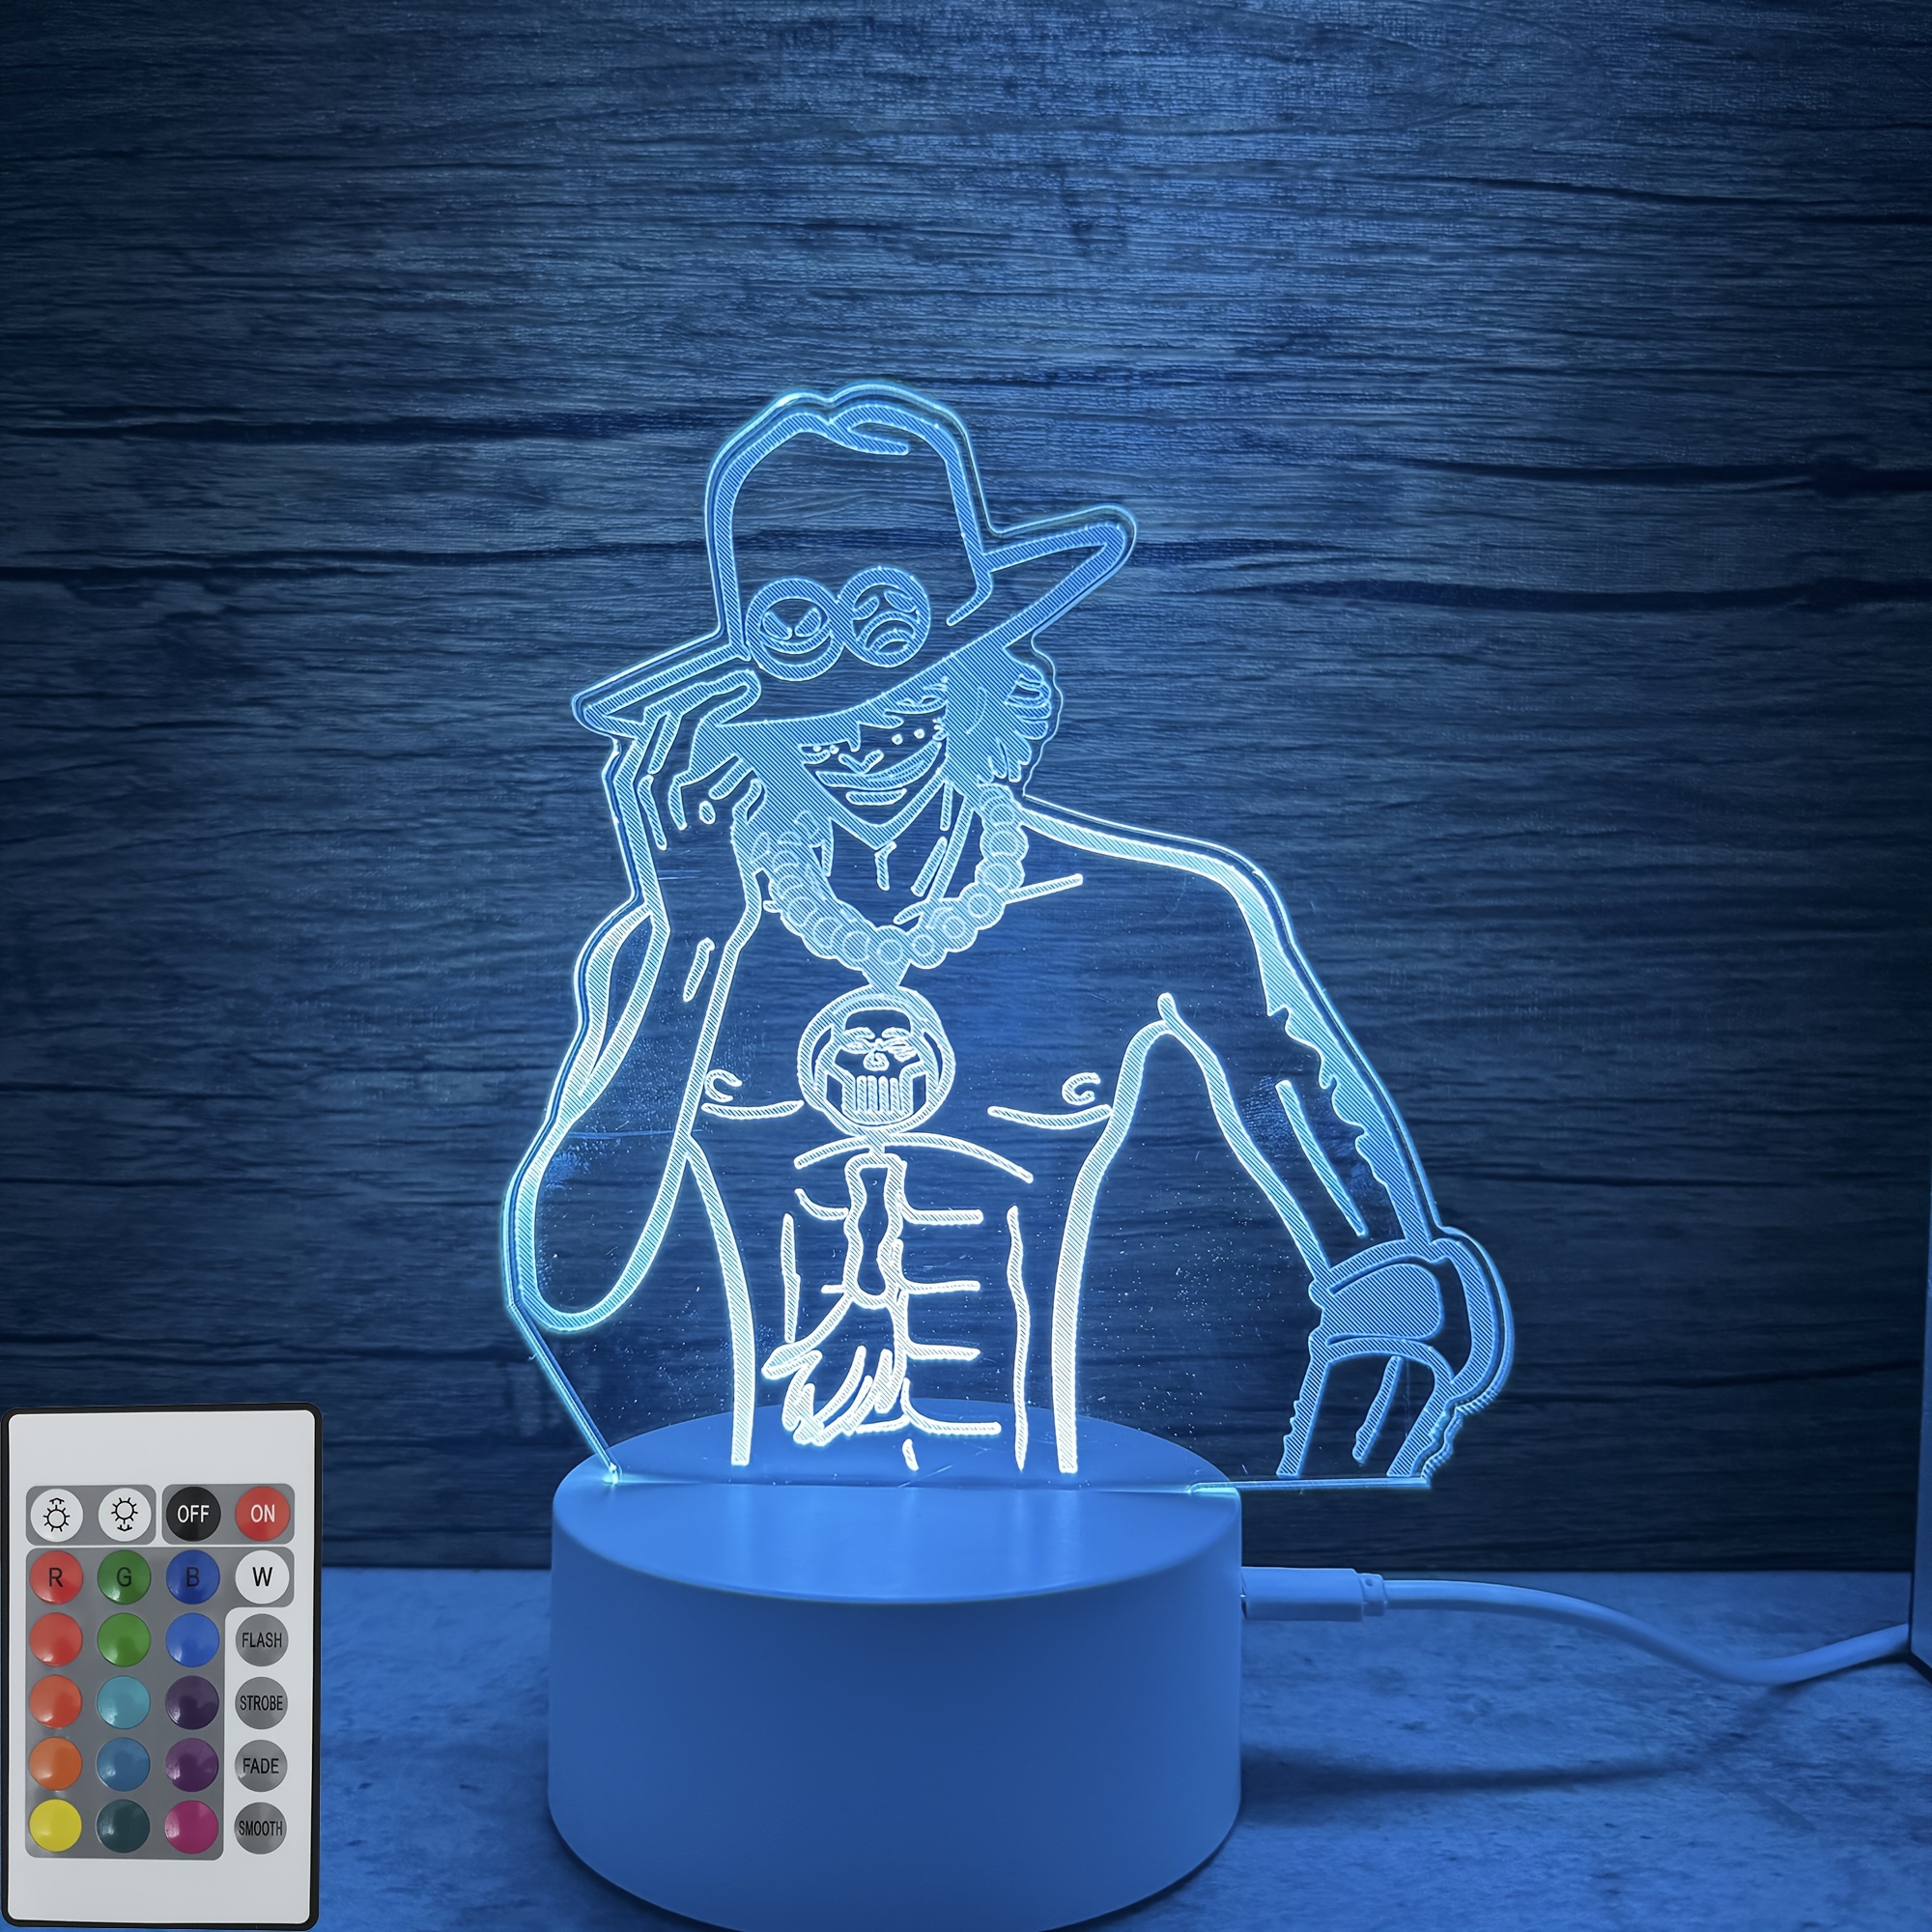 Stitch Lampe, 3D LED veilleuse, anime Stitch 16 couleurs lampe de table de  bureau pour filles, lampe de nuit à distance pour chambre de bébé, cadeau d'anniversaire  pour enfants de Noël